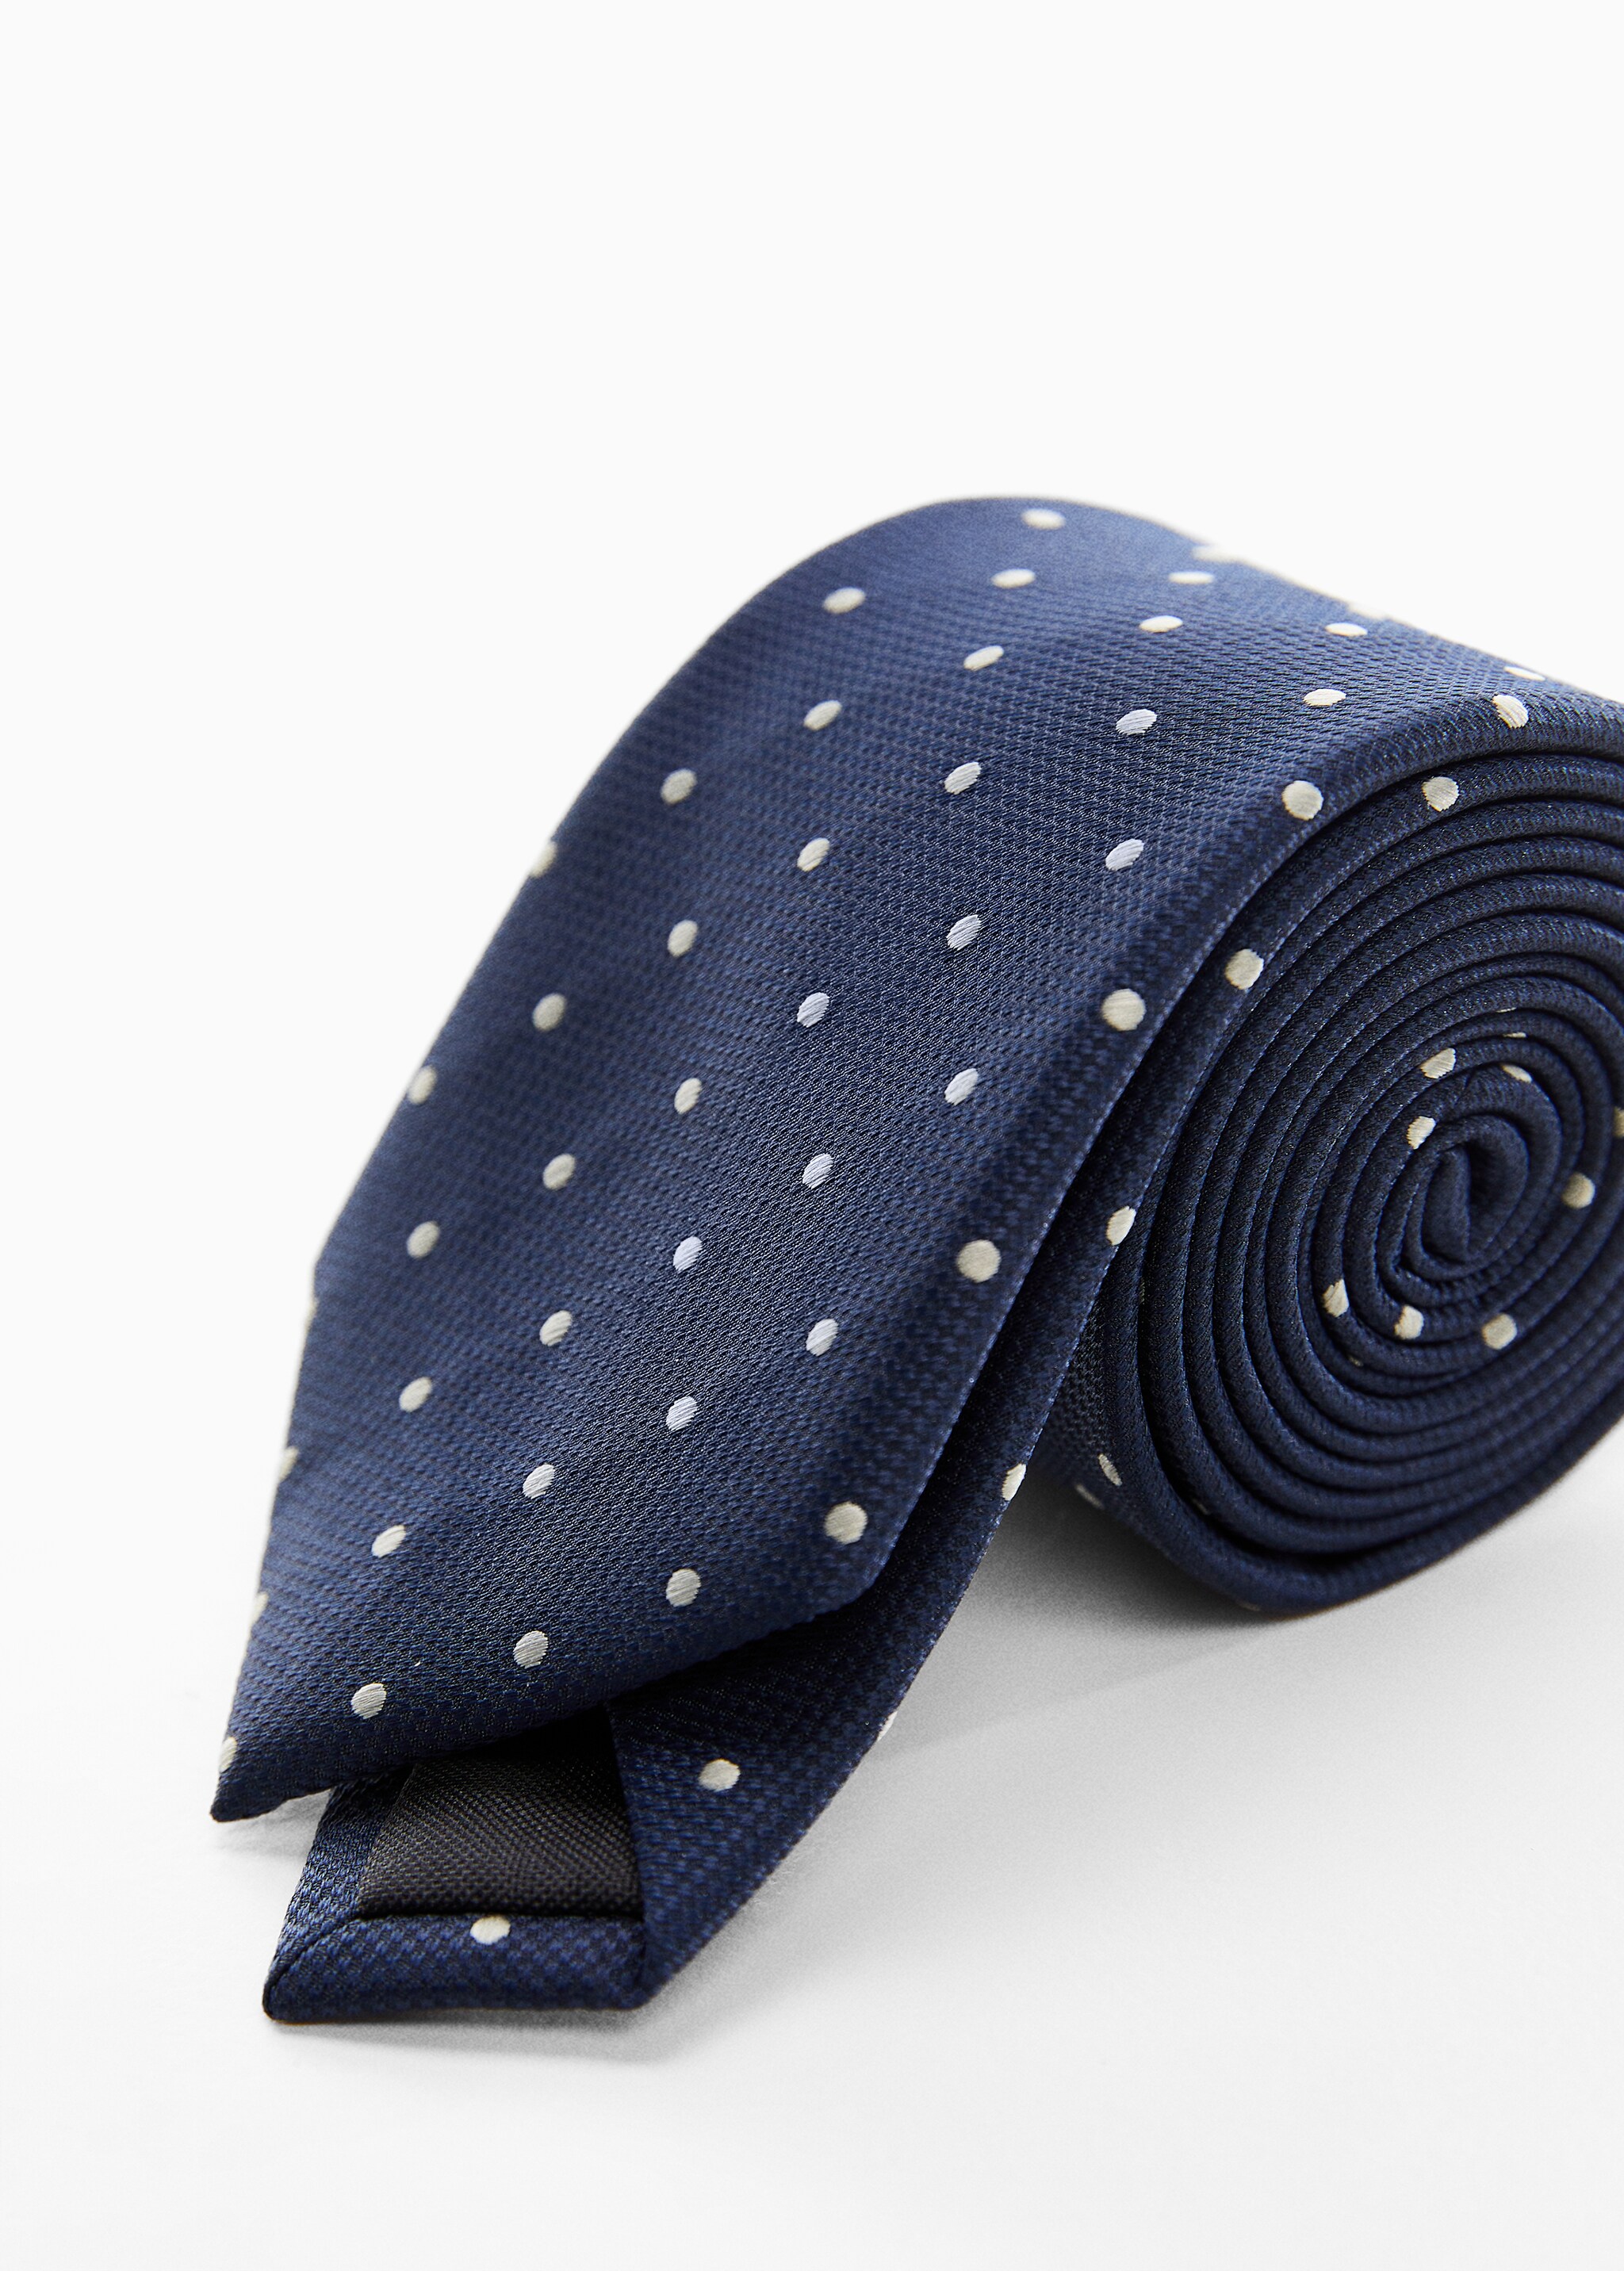 Krawatte mit Polka Dots - Mittlere Ansicht